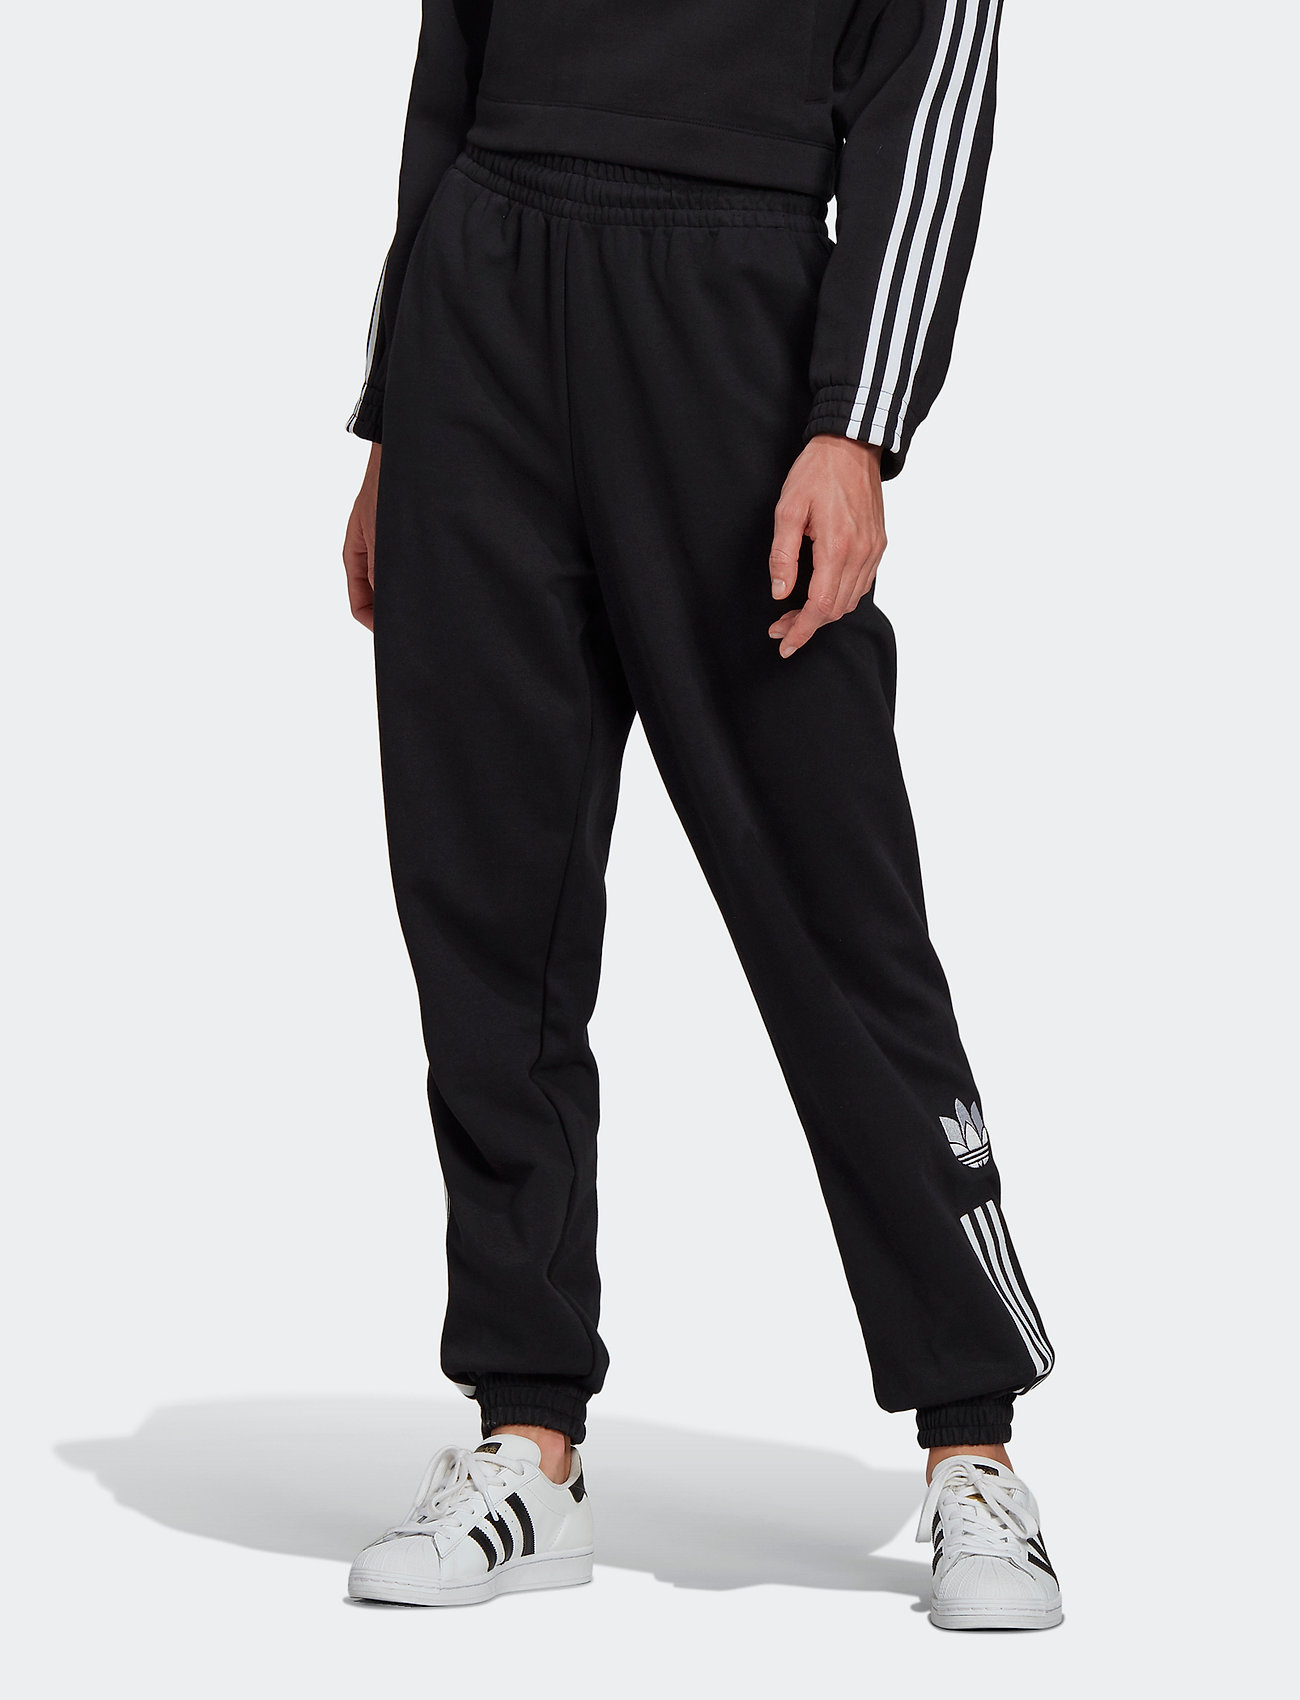 adidas Originals Adicolor 3d Trefoil Track Pants W - Sweatpants | Boozt.com